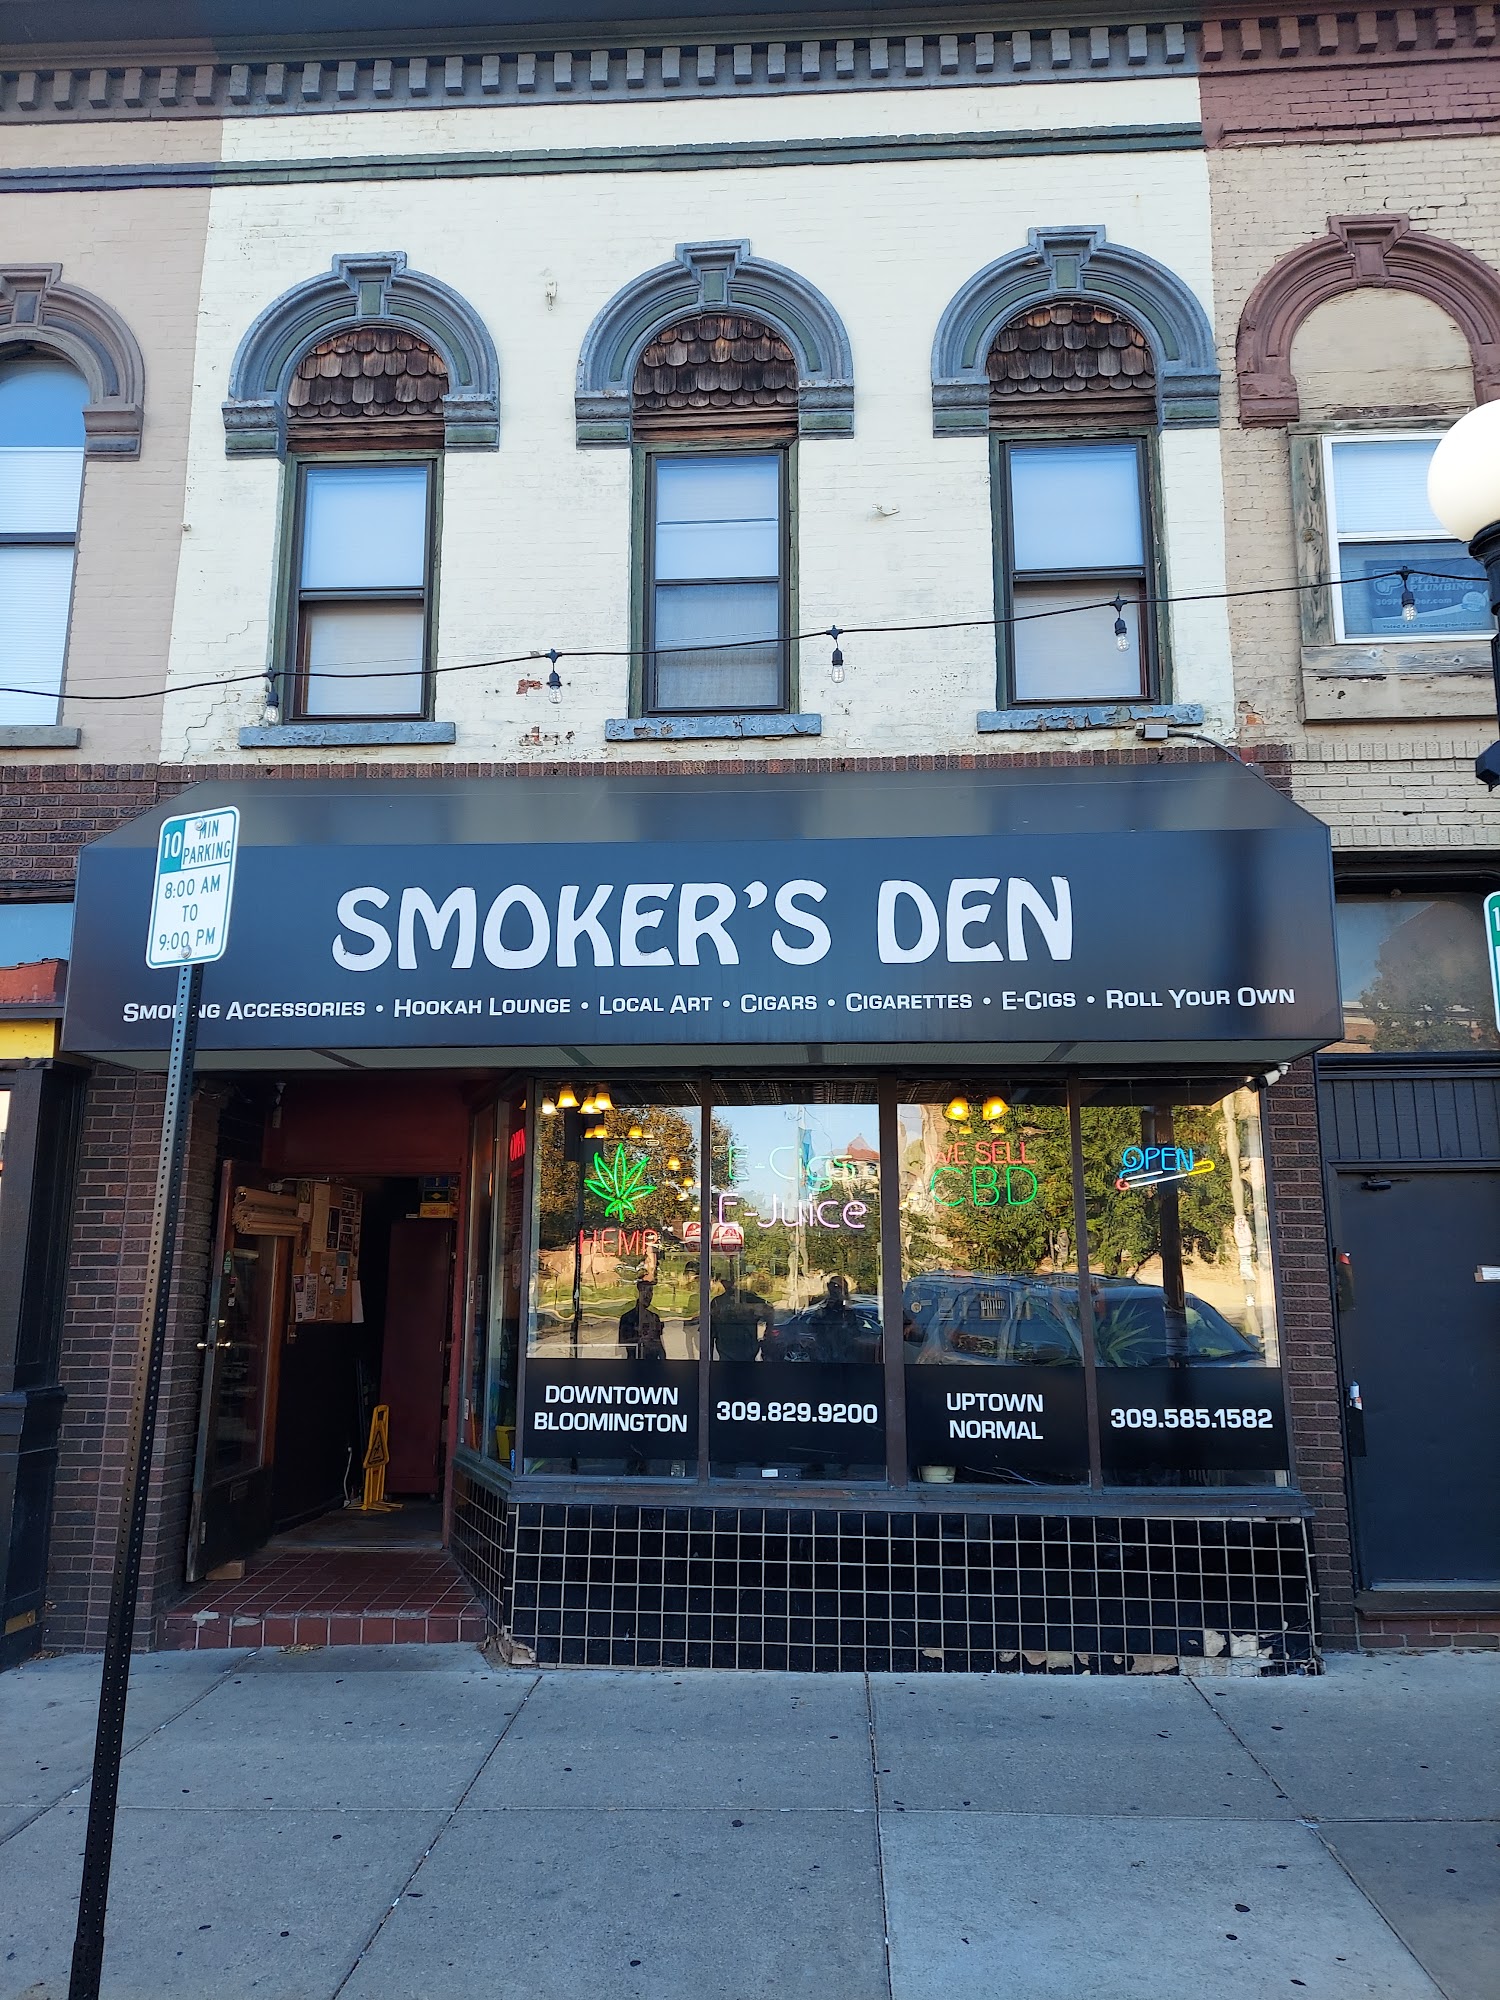 The Smoker's Den